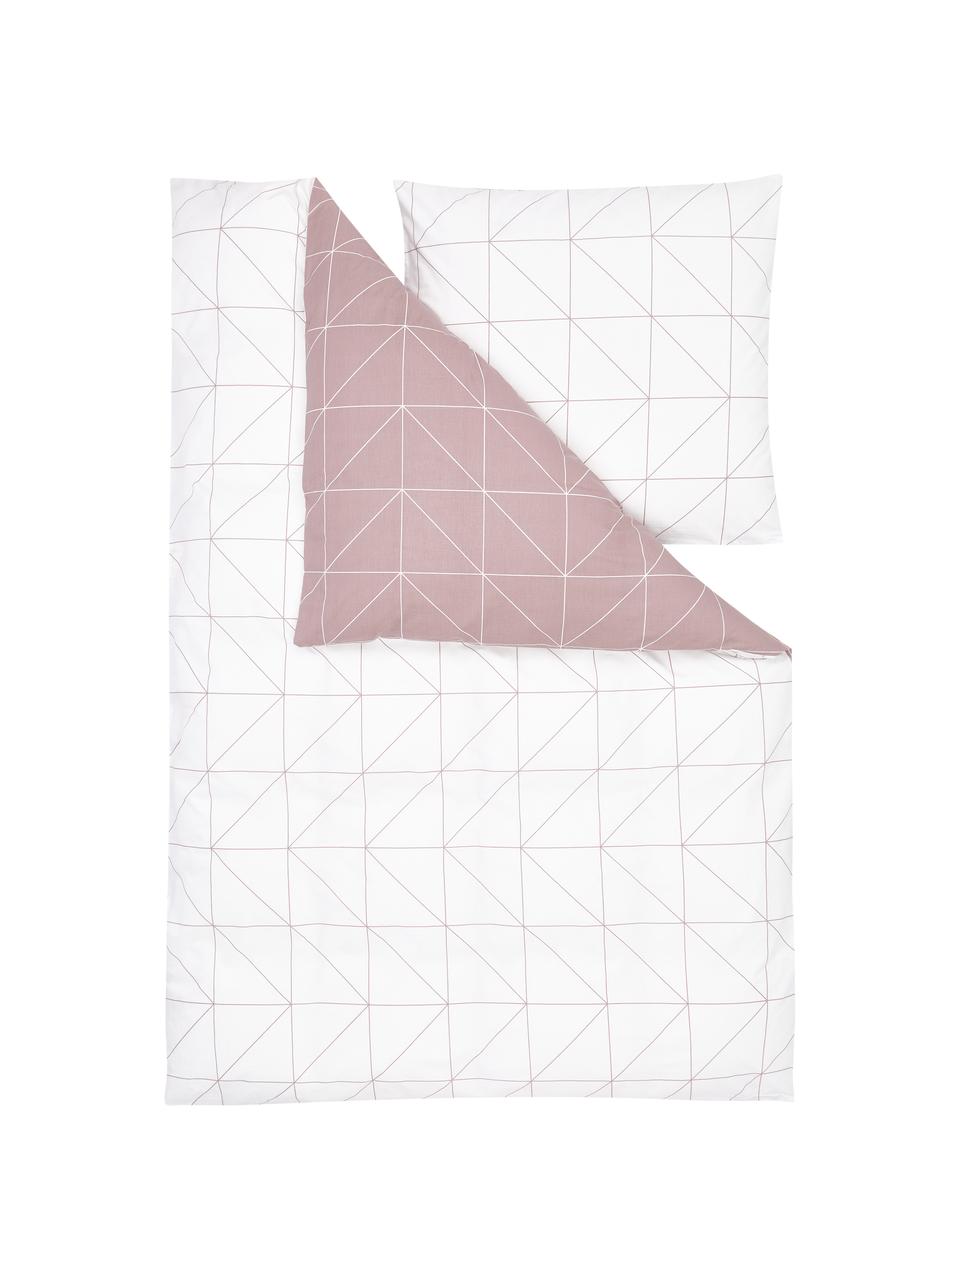 Obojstranná posteľná bielizeň z bavlny s grafickým vzorom Marla, Tmavoružová, biela, 200 x 200 cm + 2 vankúše 80 x 80 cm